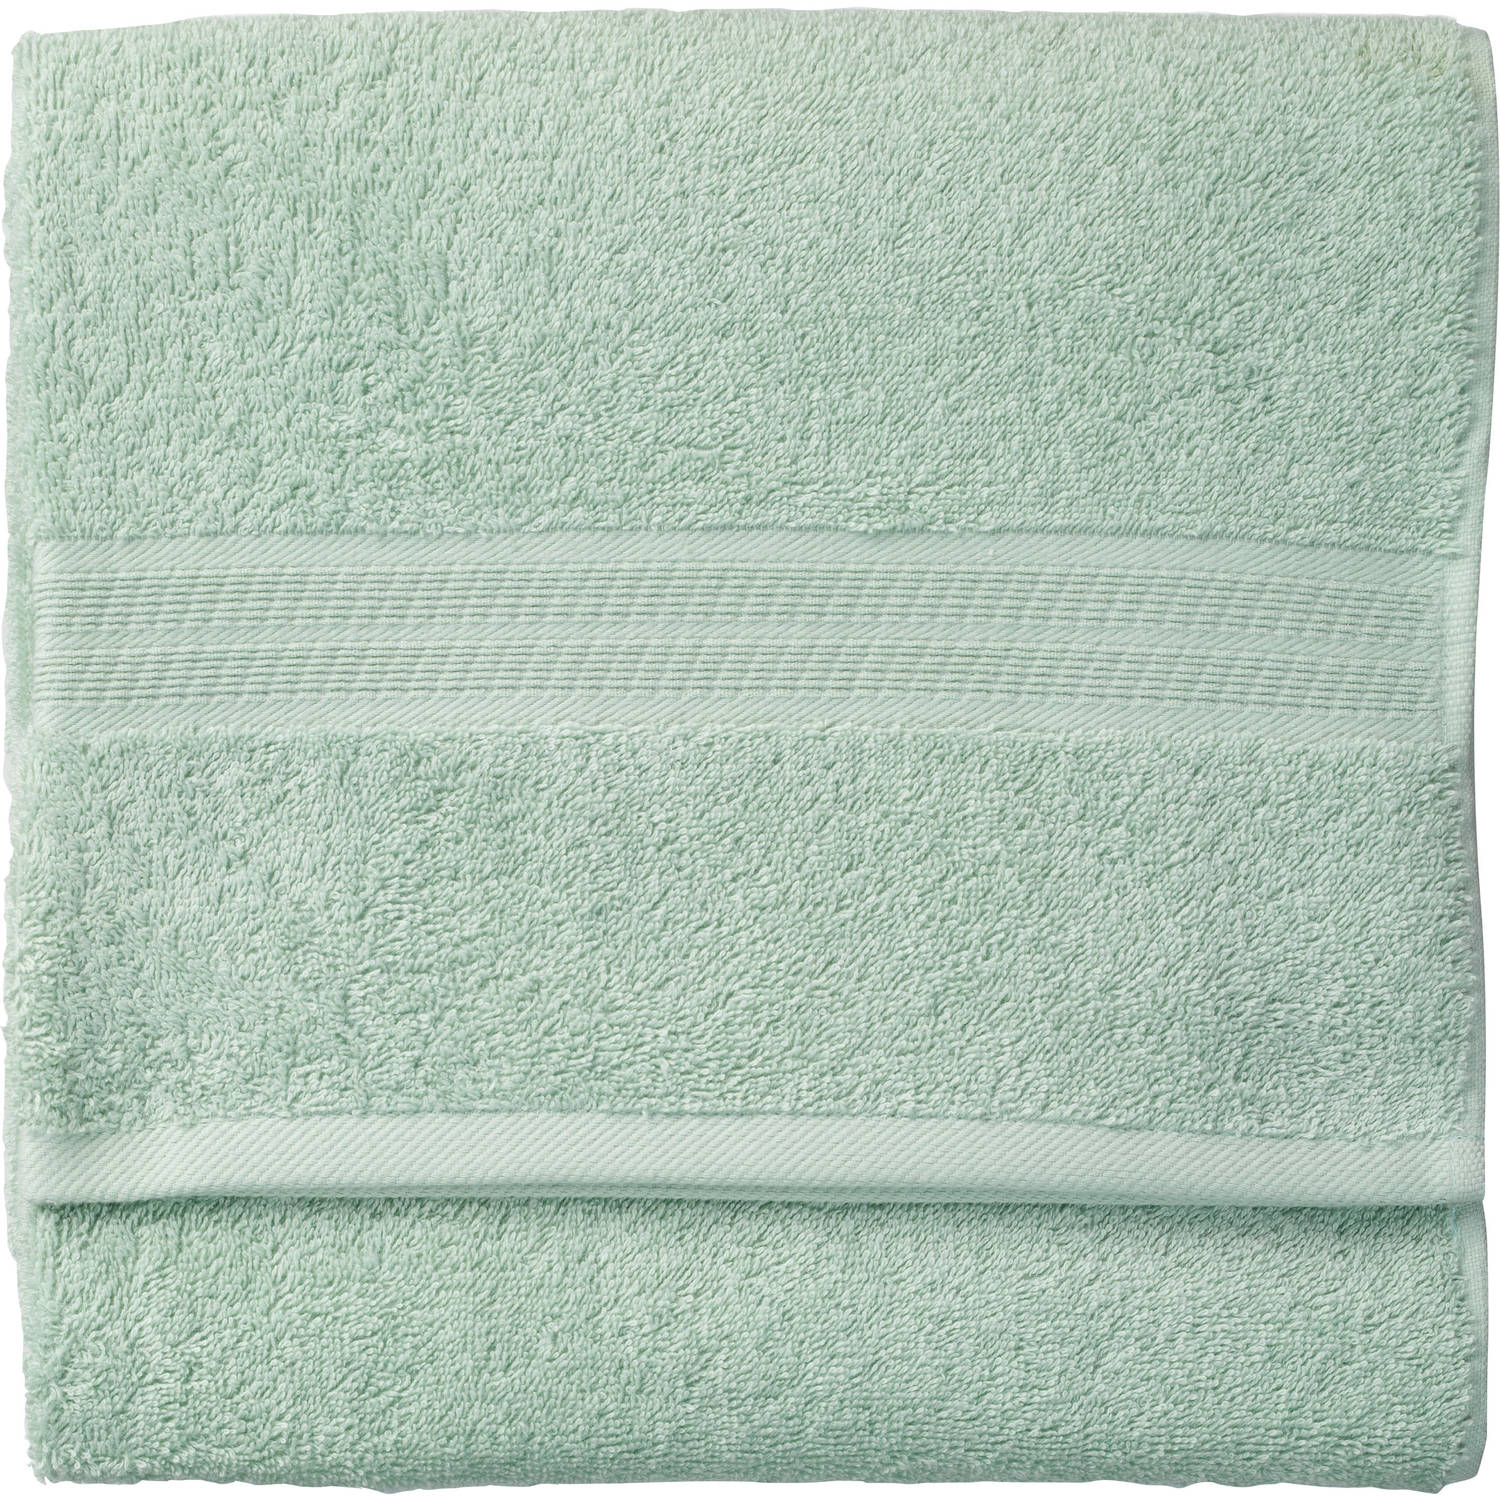 Kleuterschool Ideaal gaan beslissen Blokker handdoek 500g - lichtgroen - 110x60 cm | Blokker